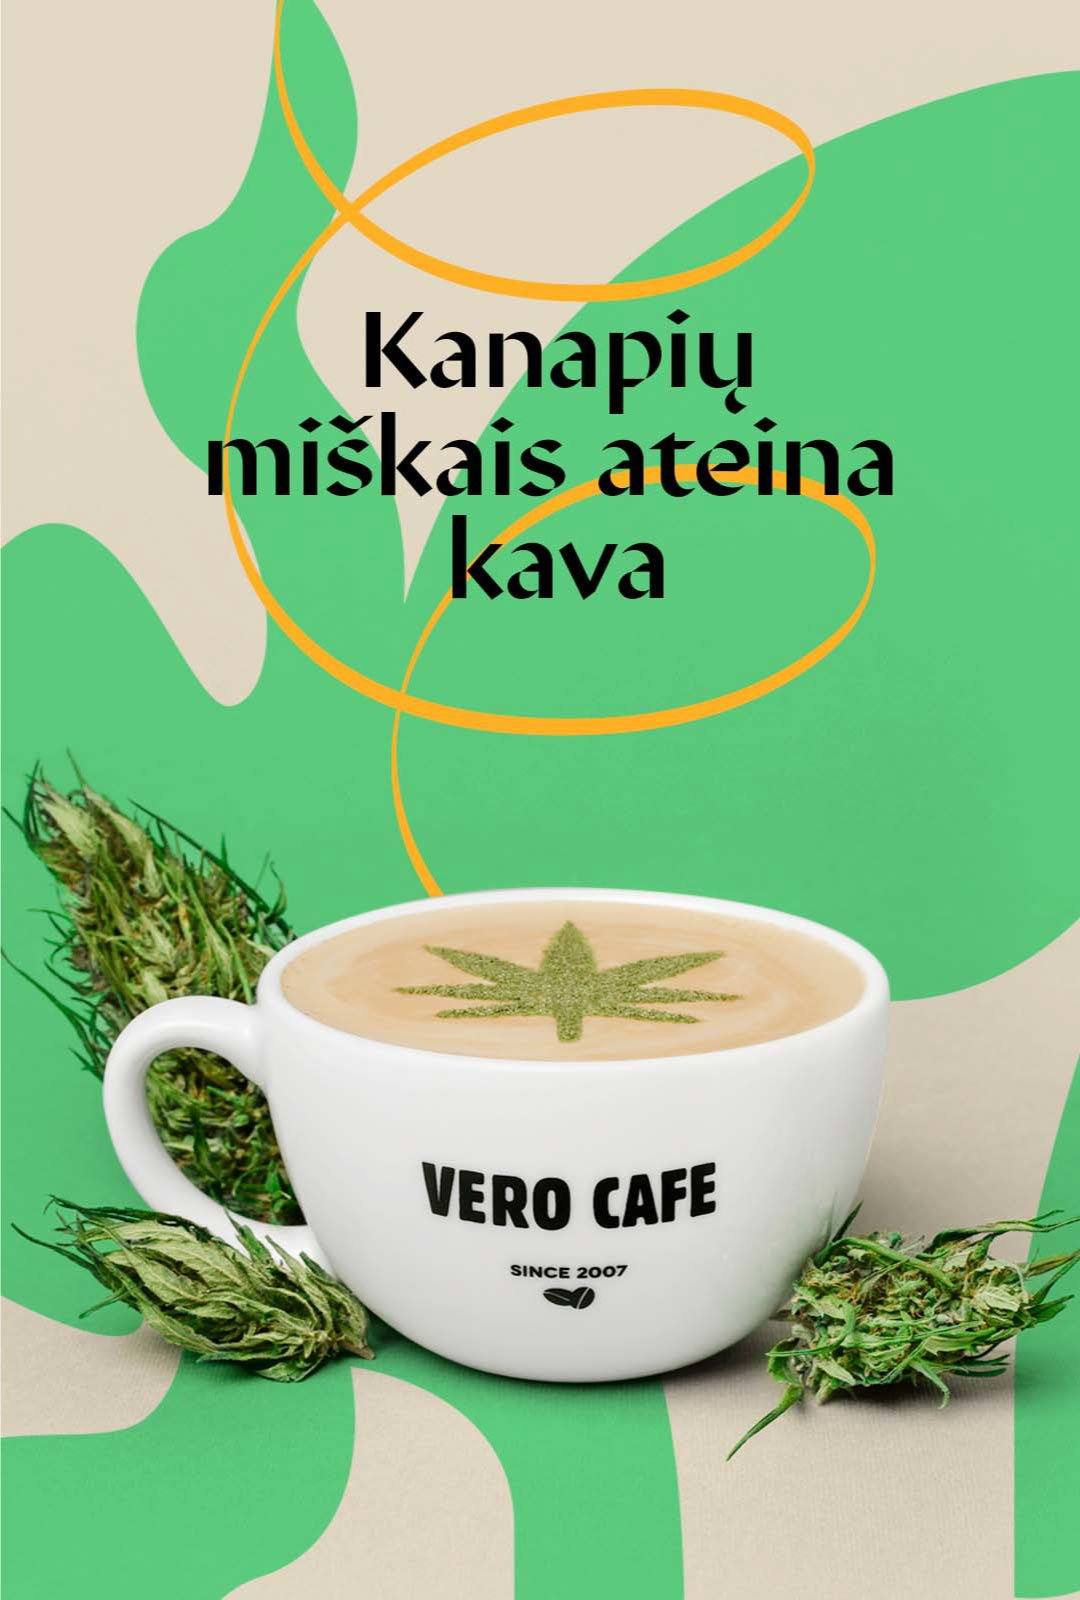 VERO CAFE / Kanapių Latte